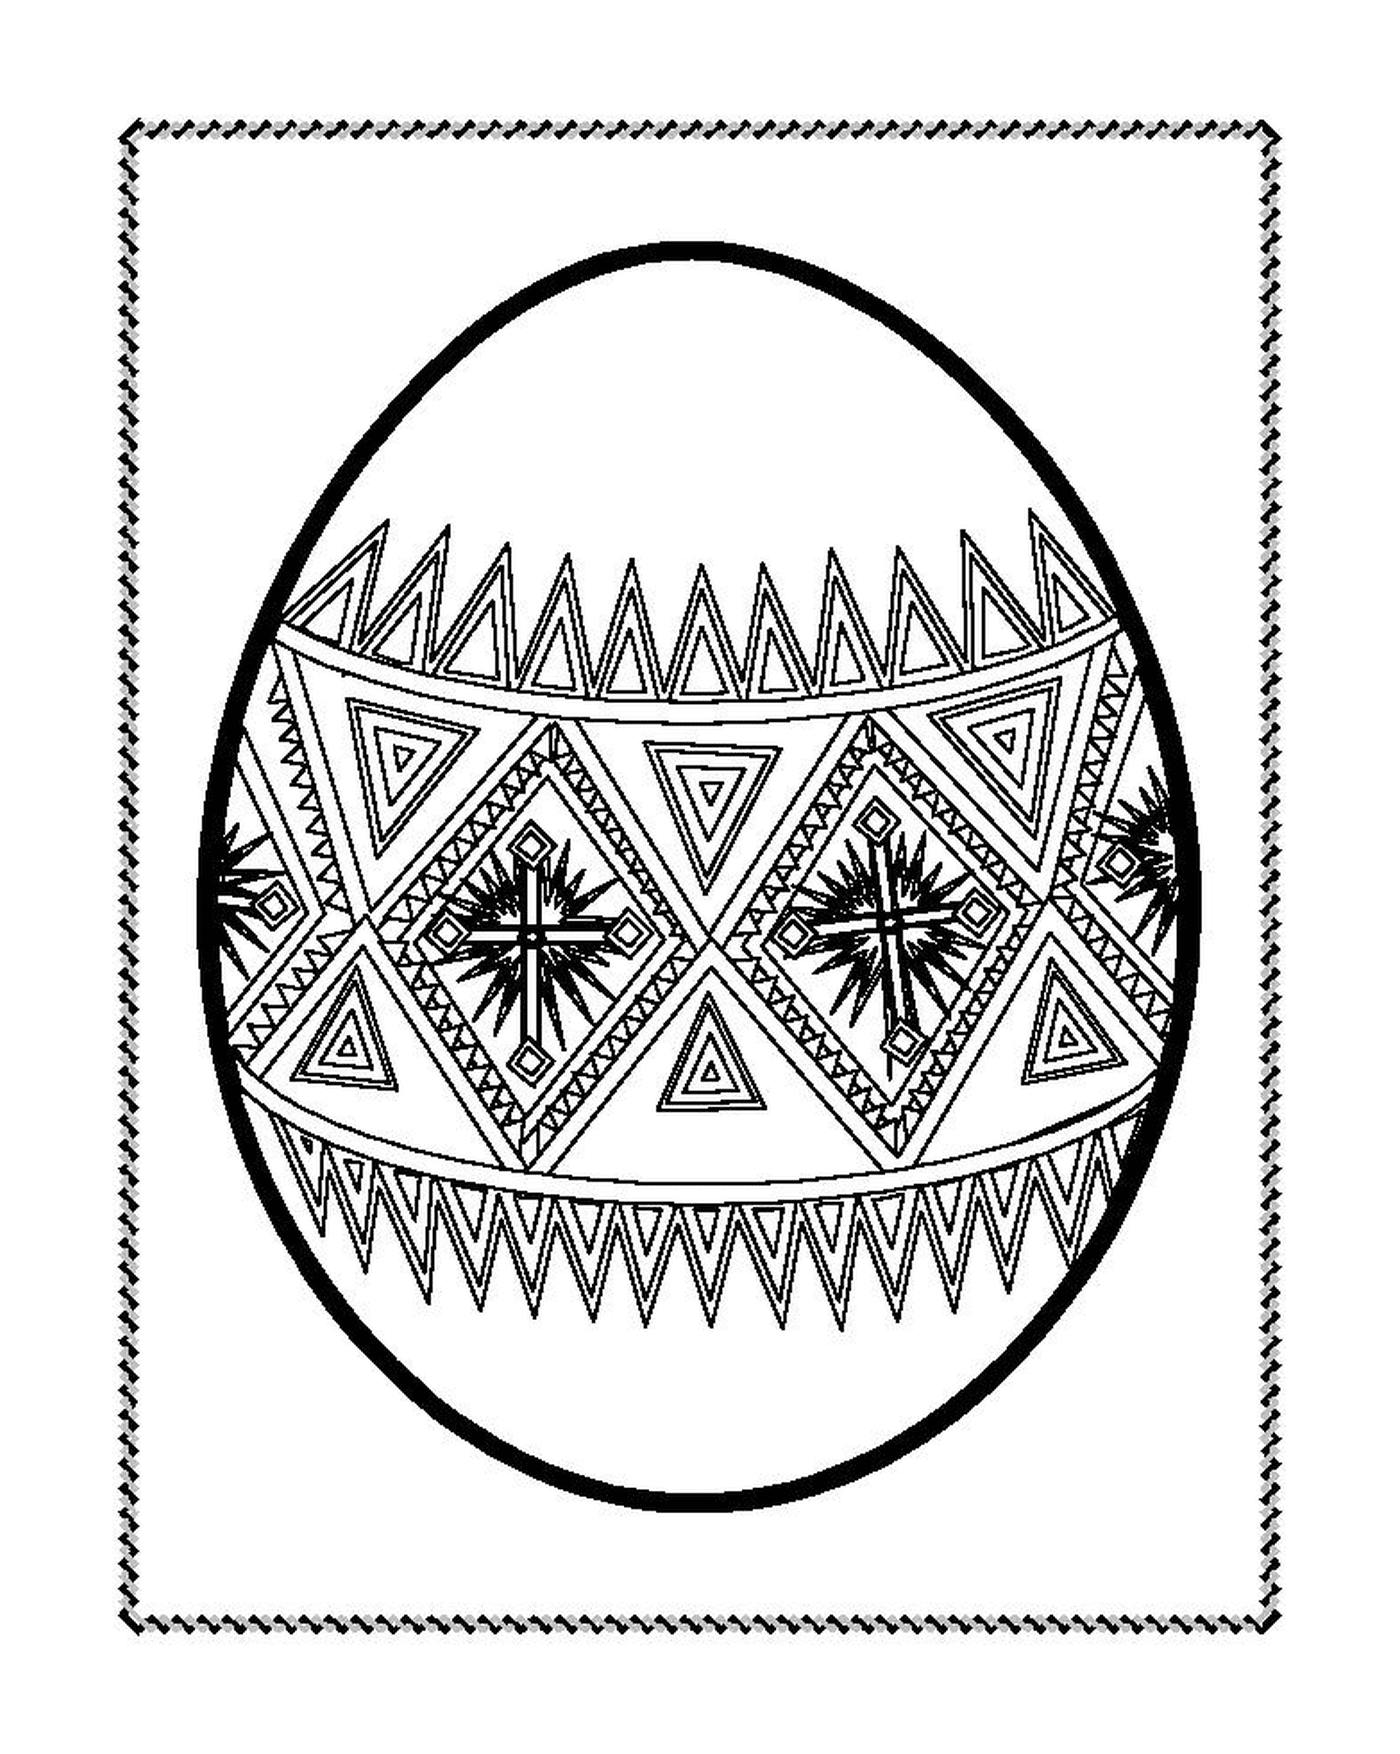  Ovo de Páscoa decorado com motivos geométricos 